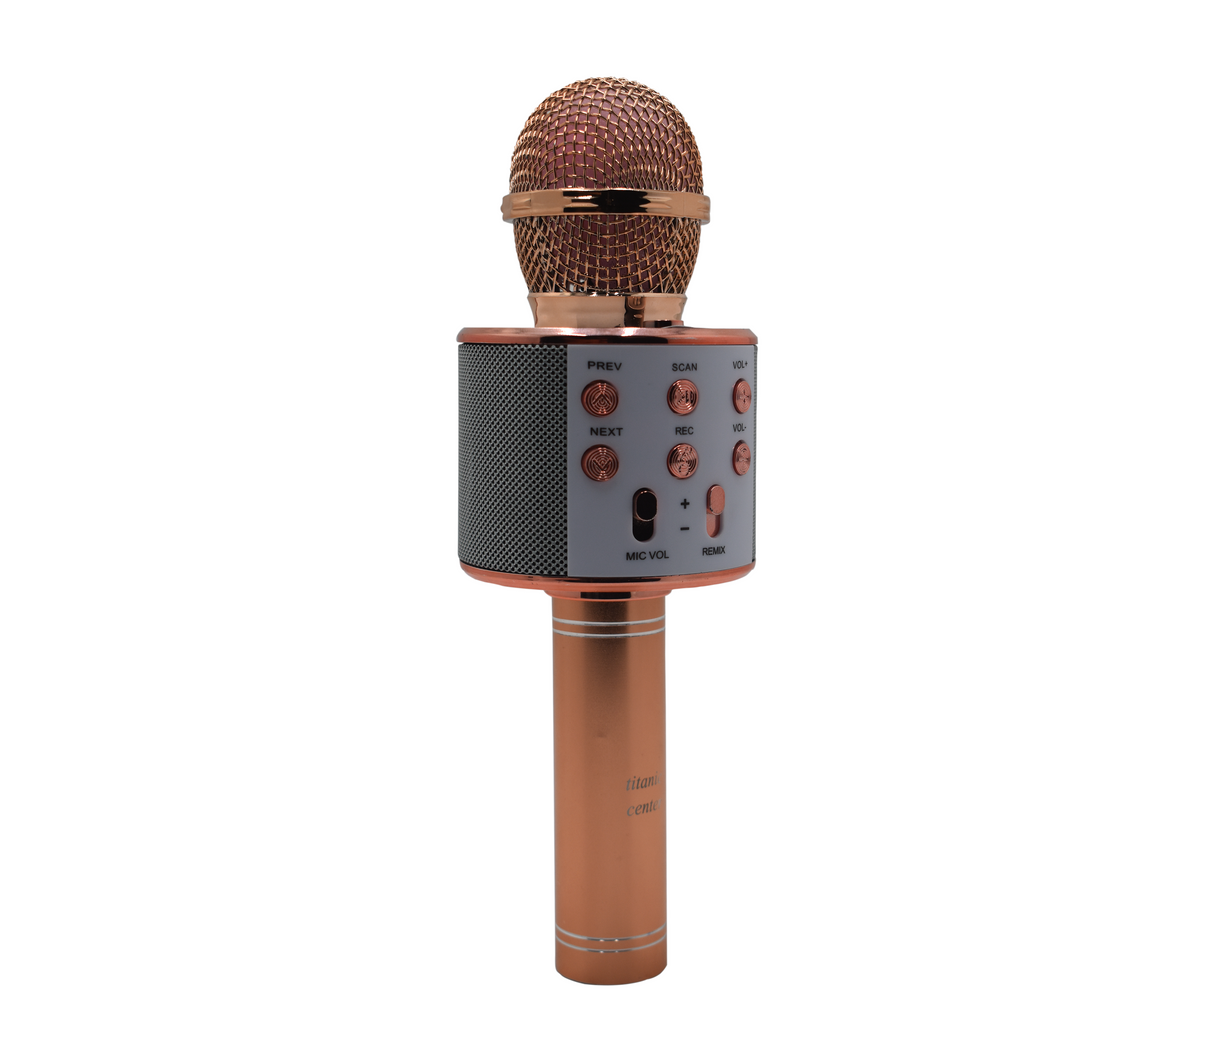 Micrófono inalámbrico con Bluetooth rosado Powerfik